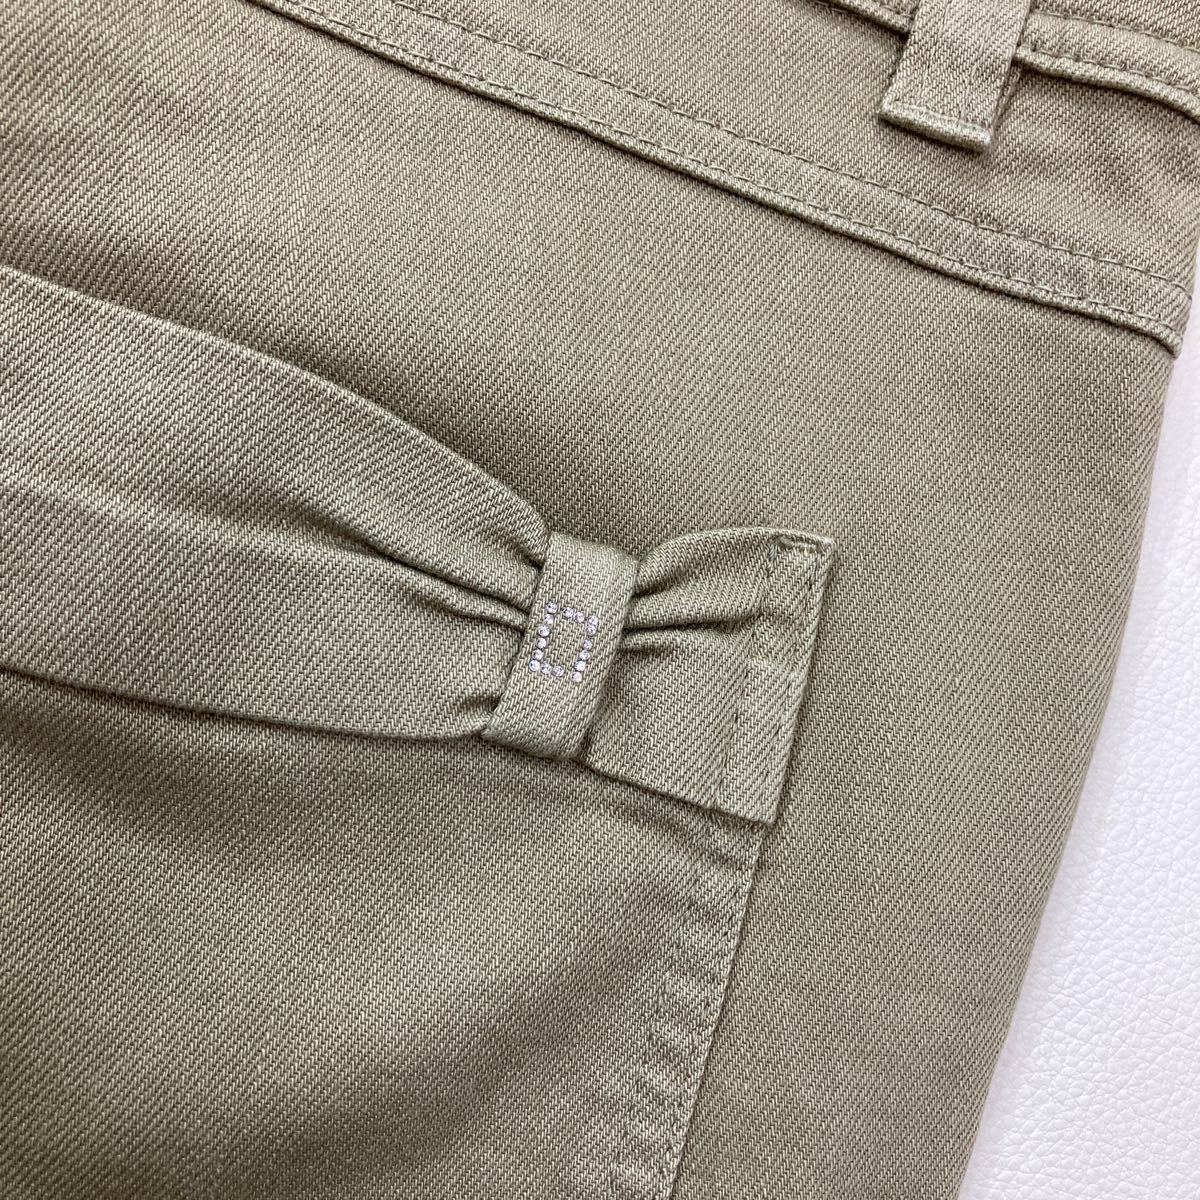 170 ESCADA Laurel Escada Laurel стрейч обтягивающий брюки Германия производства лента стразы размер 38 женский 30430AY